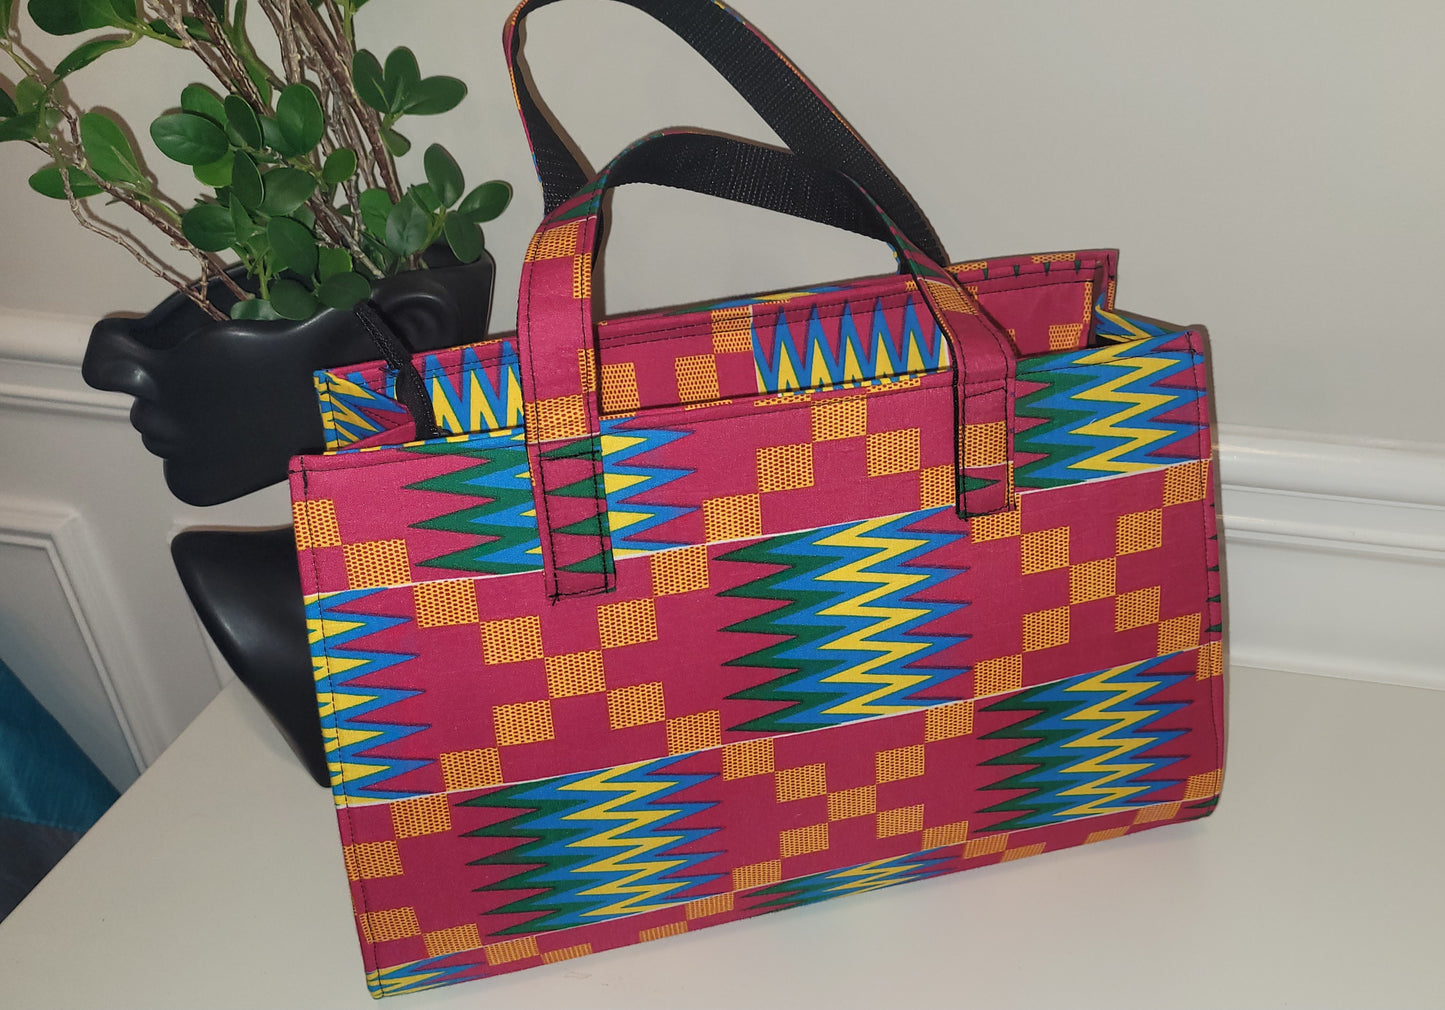 The Shelbi - Ghana Handbag Collection